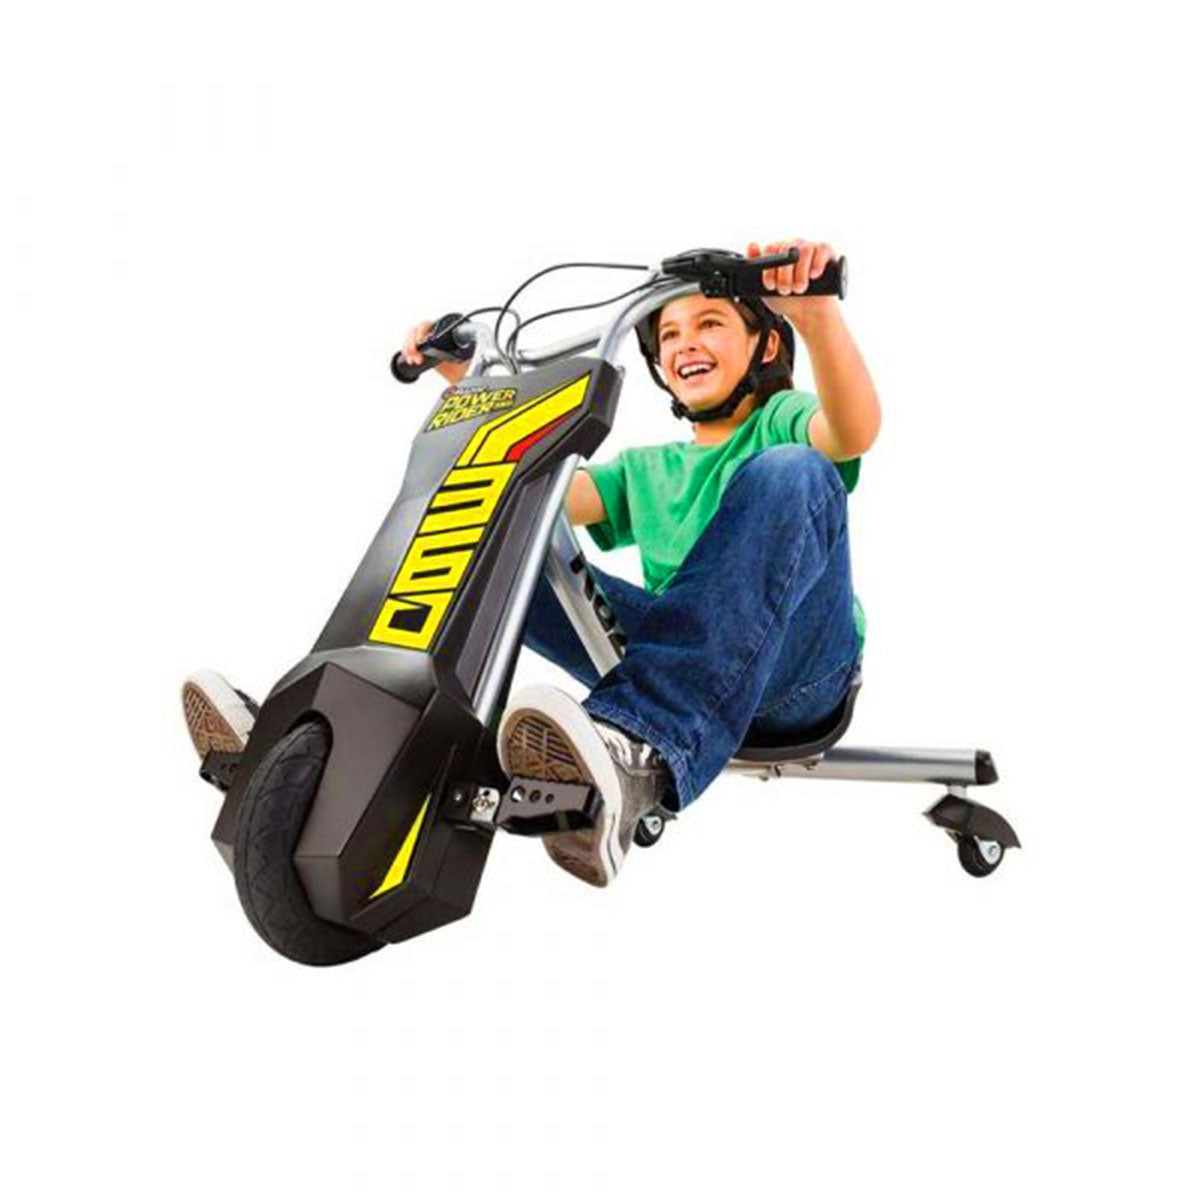 Razor - Power Rider Machine 360 V2 - Black 'N Yellow